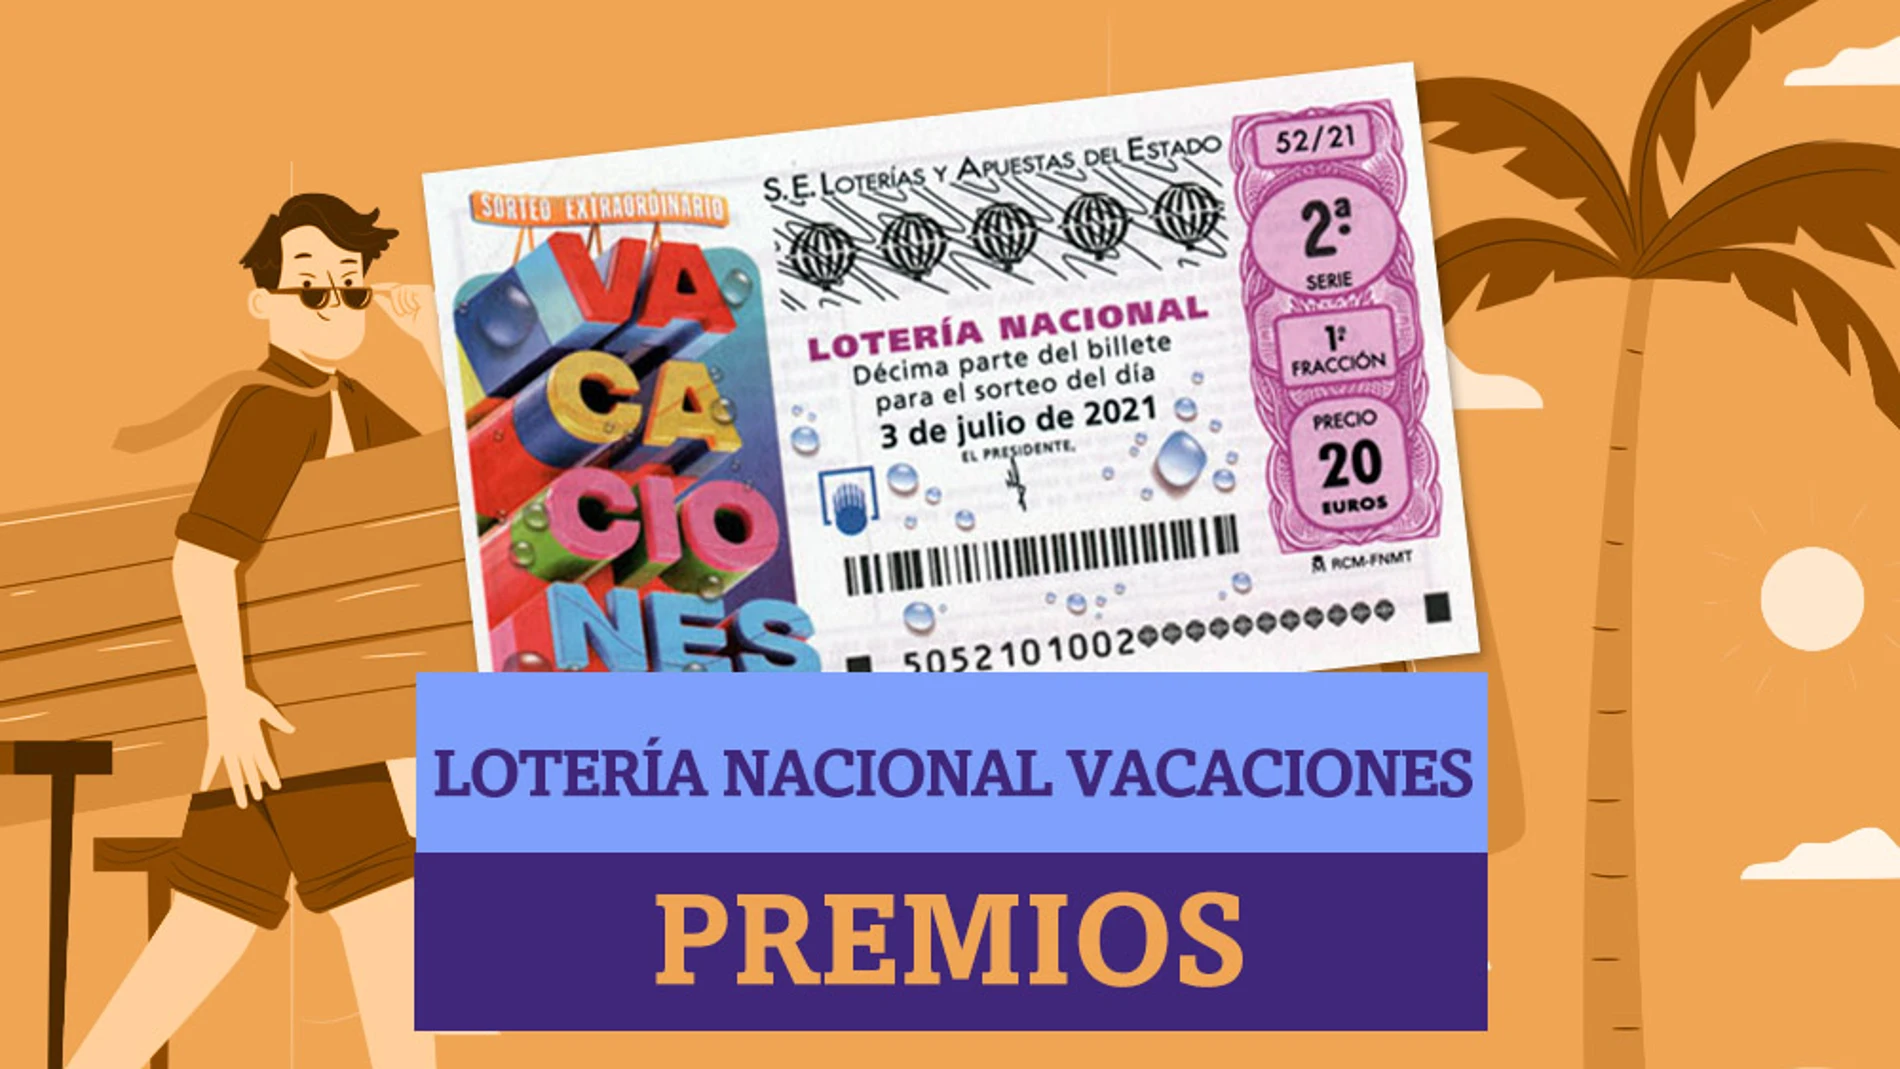 ¿Qué premios reparte el Sorteo Extraordinario de Lotería Nacional de Vacaciones?